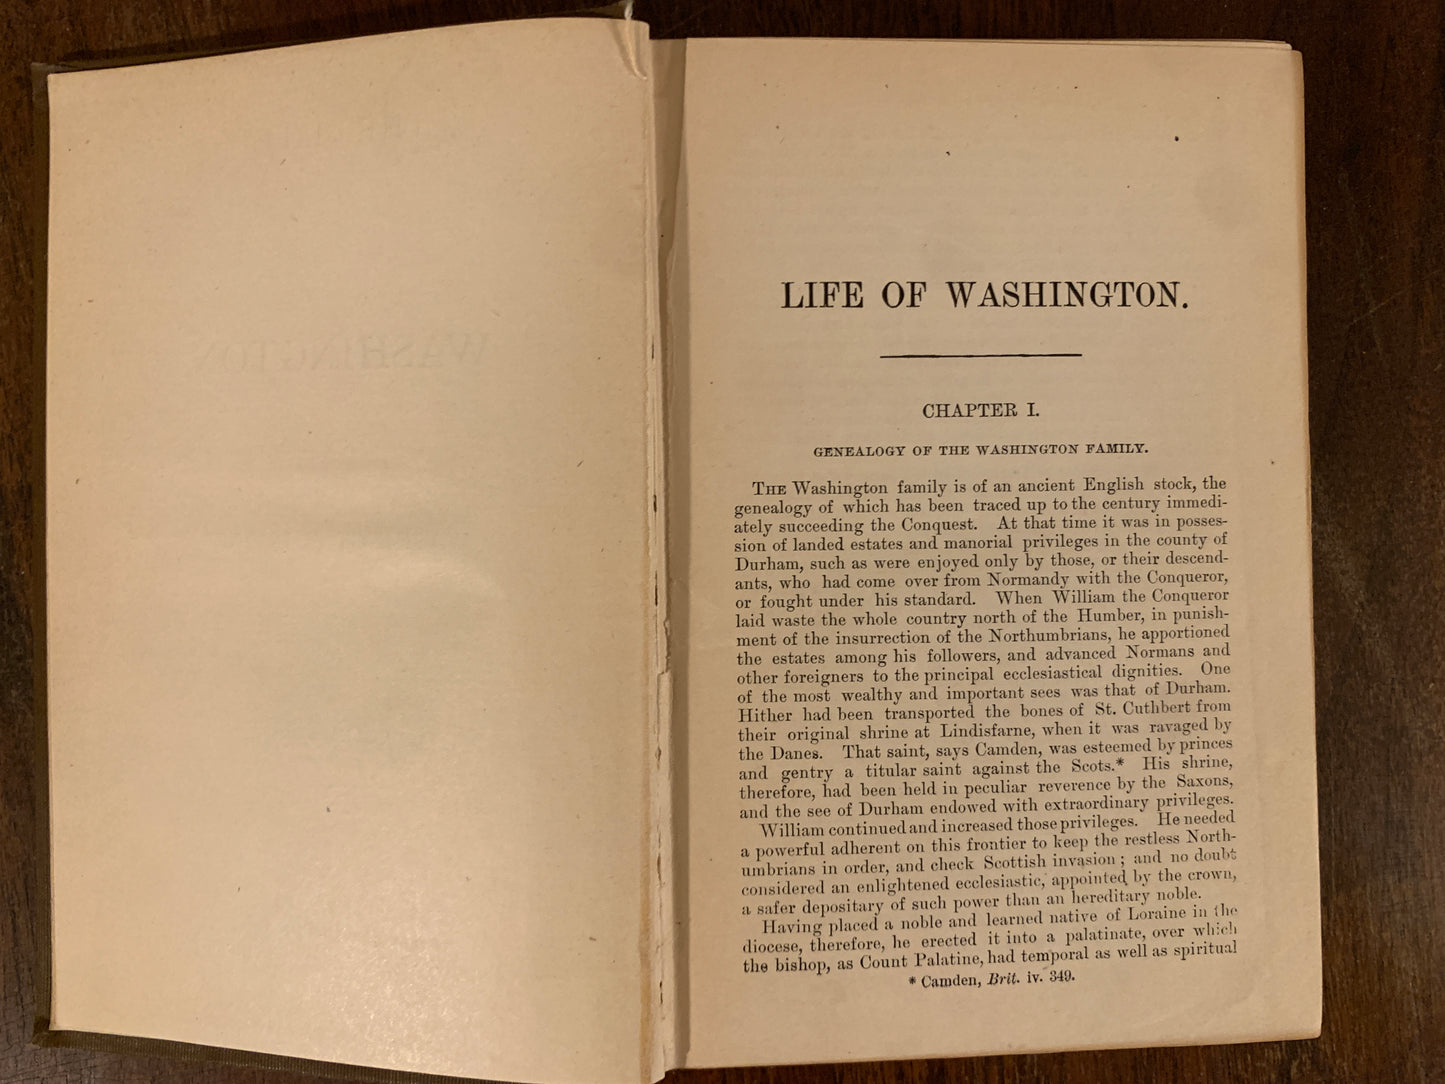 The Life of Washington by Washington Irving, Publisher Siegel Cooper